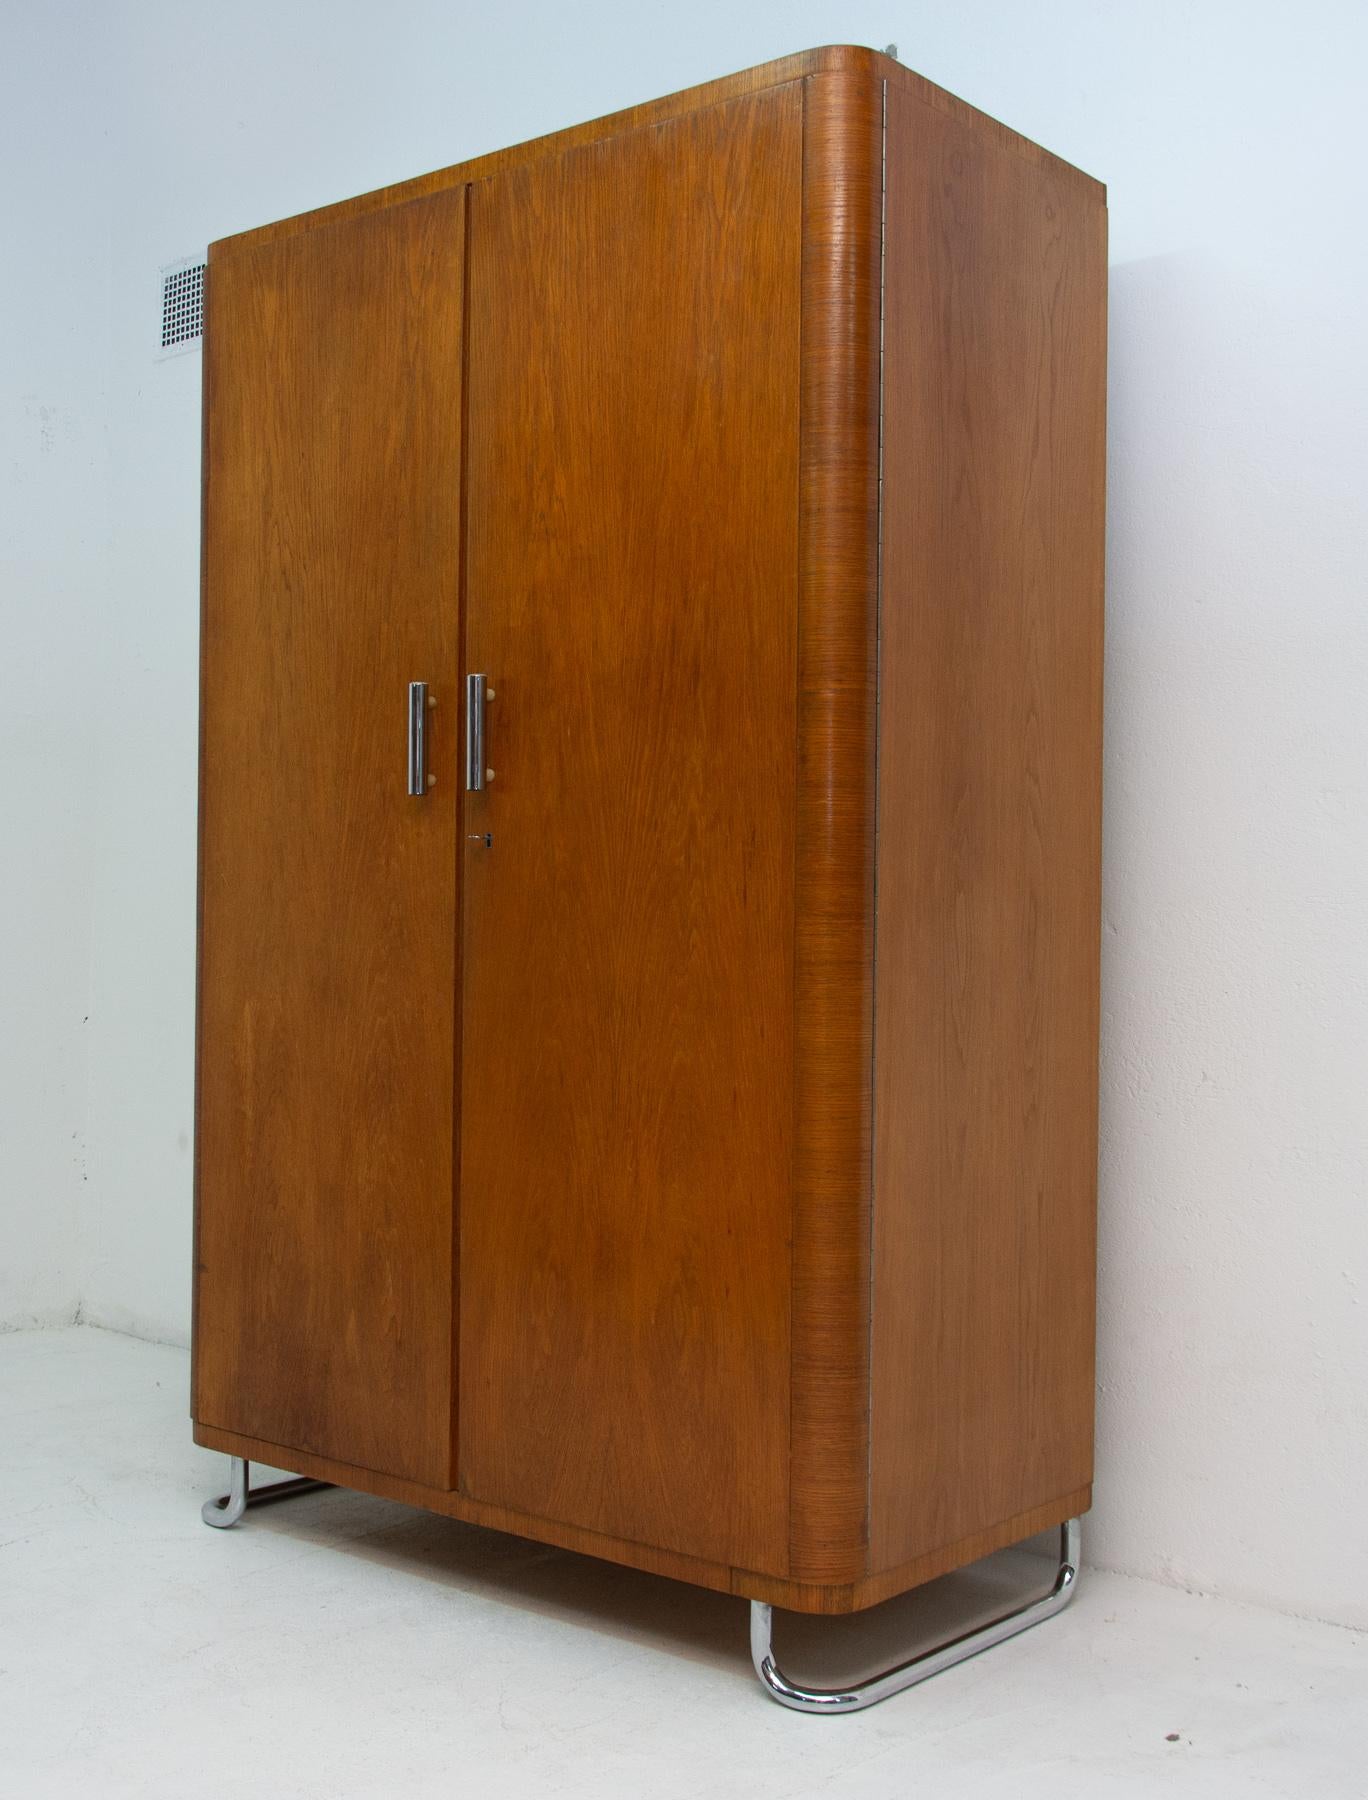 Garderobe mit Chromelementen aus der Bauhaus-Zeit. Es wurde in der ehemaligen Tschechoslowakei hergestellt. In den 1930er Jahren von Vichr & spol entworfen und in den 1950er Jahren von der Firma Kovona hergestellt.
Dies ist ein typisches Beispiel